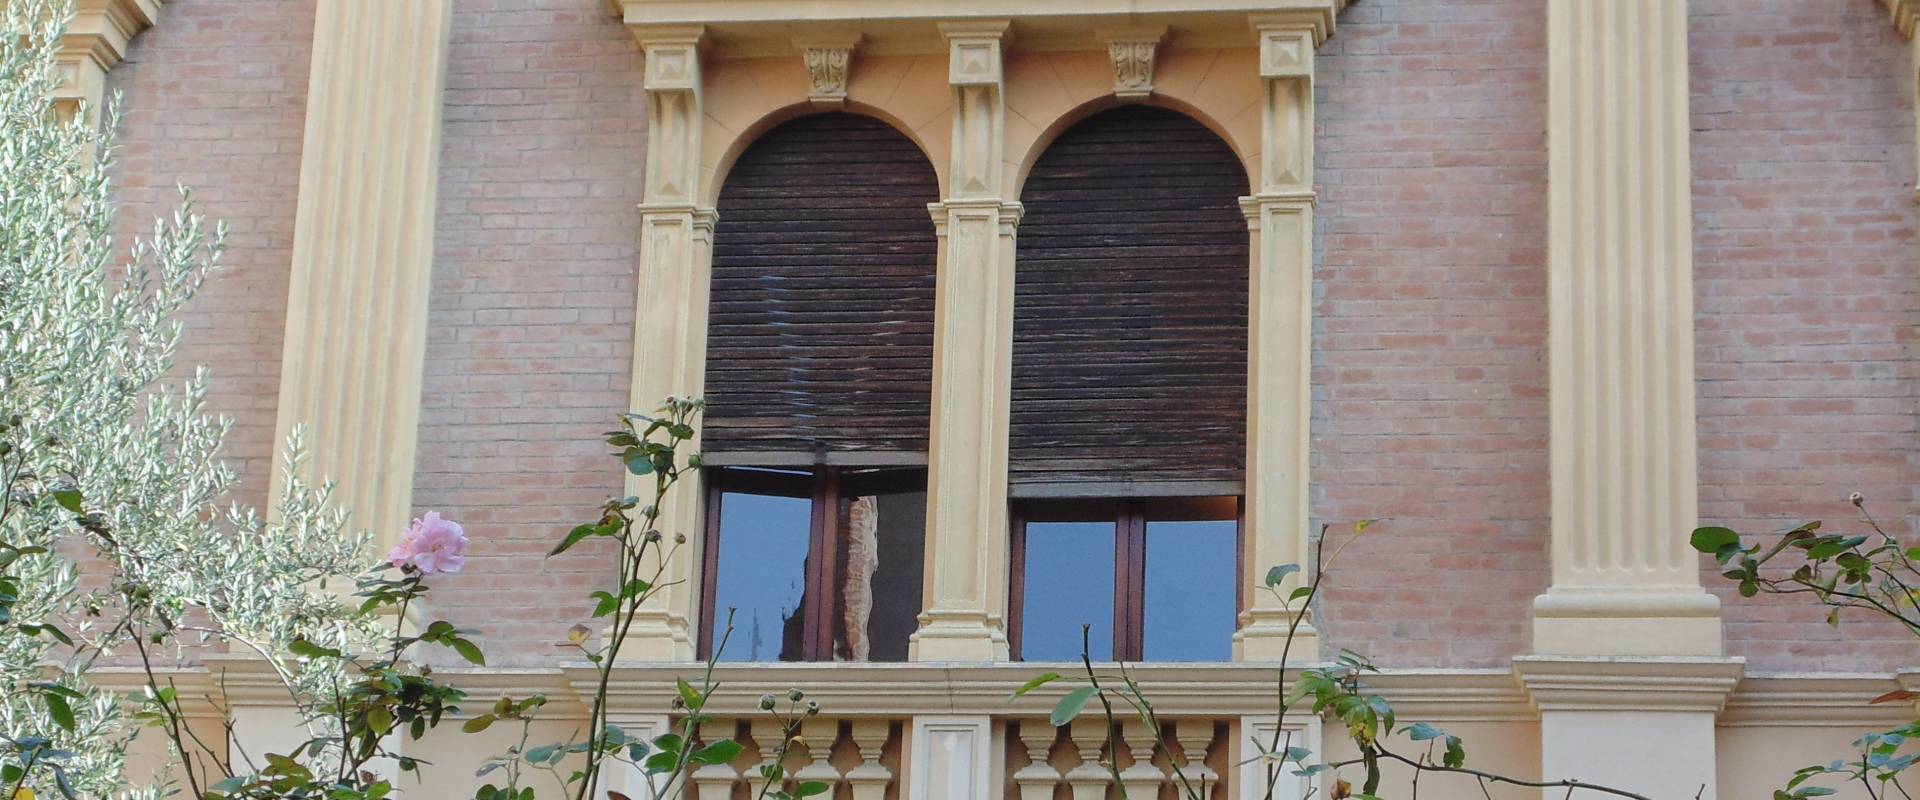 Ex Chiesa di San Francesco - Bilioteca Comunale (finestra) photo by Maurolattuga